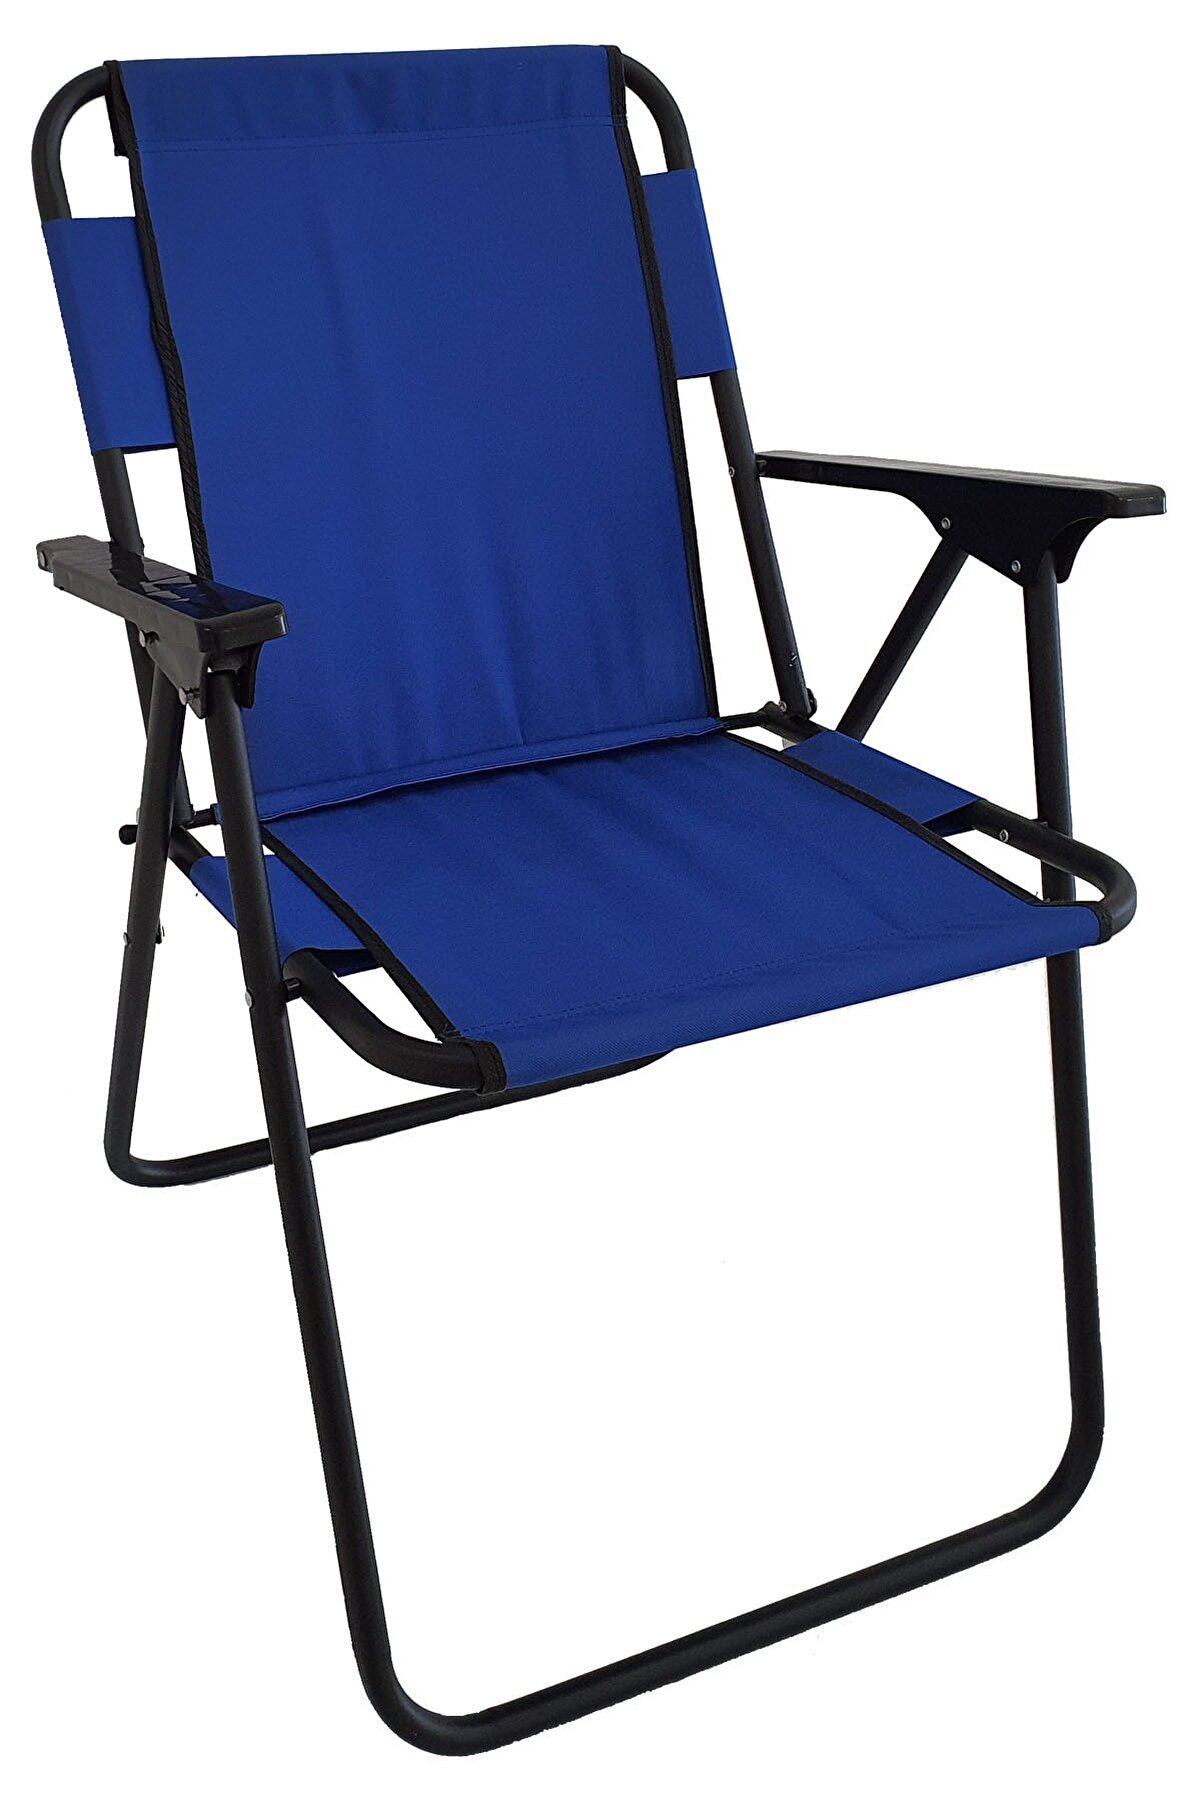 Bofigo Kamp Sandalyesi Katlanır Sandalye Piknik Sandalyesi Plaj Sandalyesi Mavi